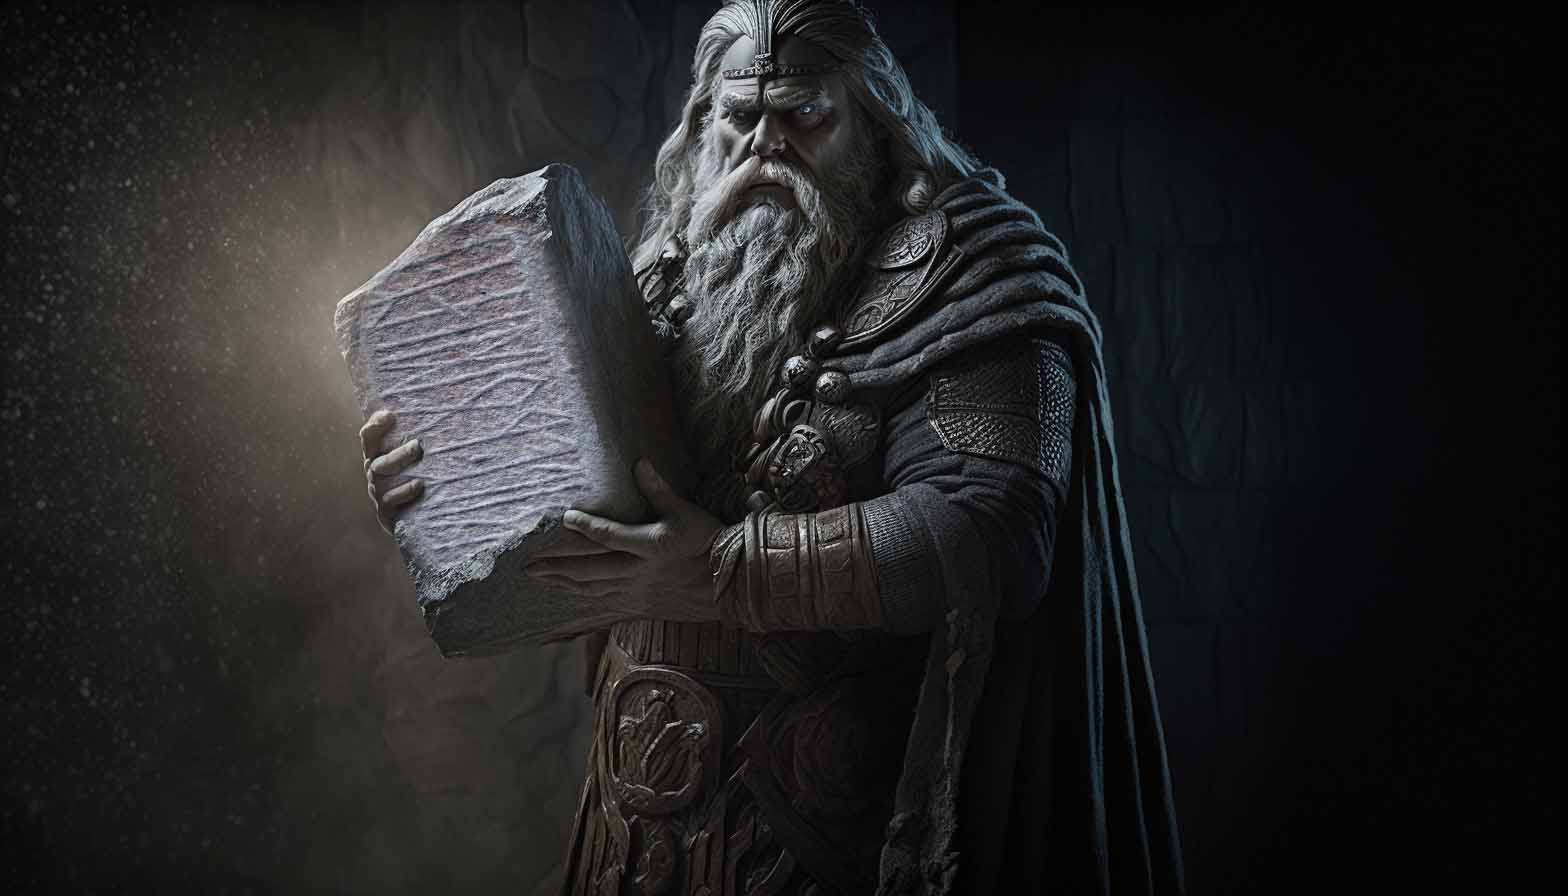 Inscrição antiga referenciando Odin encontrada na Dinamarca